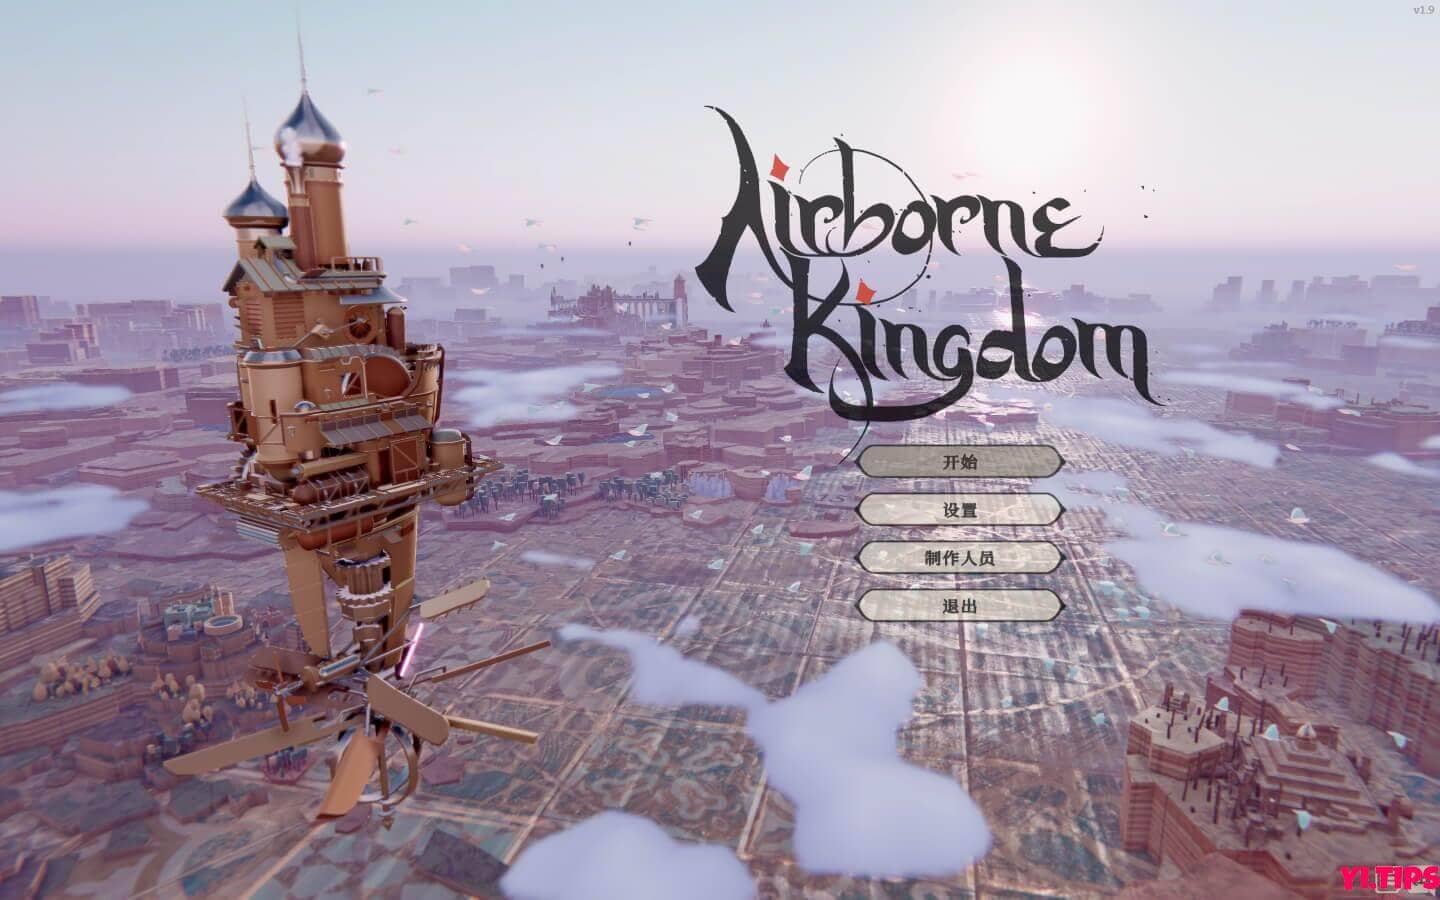 空中王国 Airborne Kingdom For Mac V1.10.3 破解版-Mac游戏免费下载 - Yi.Tips-Yi.Tips